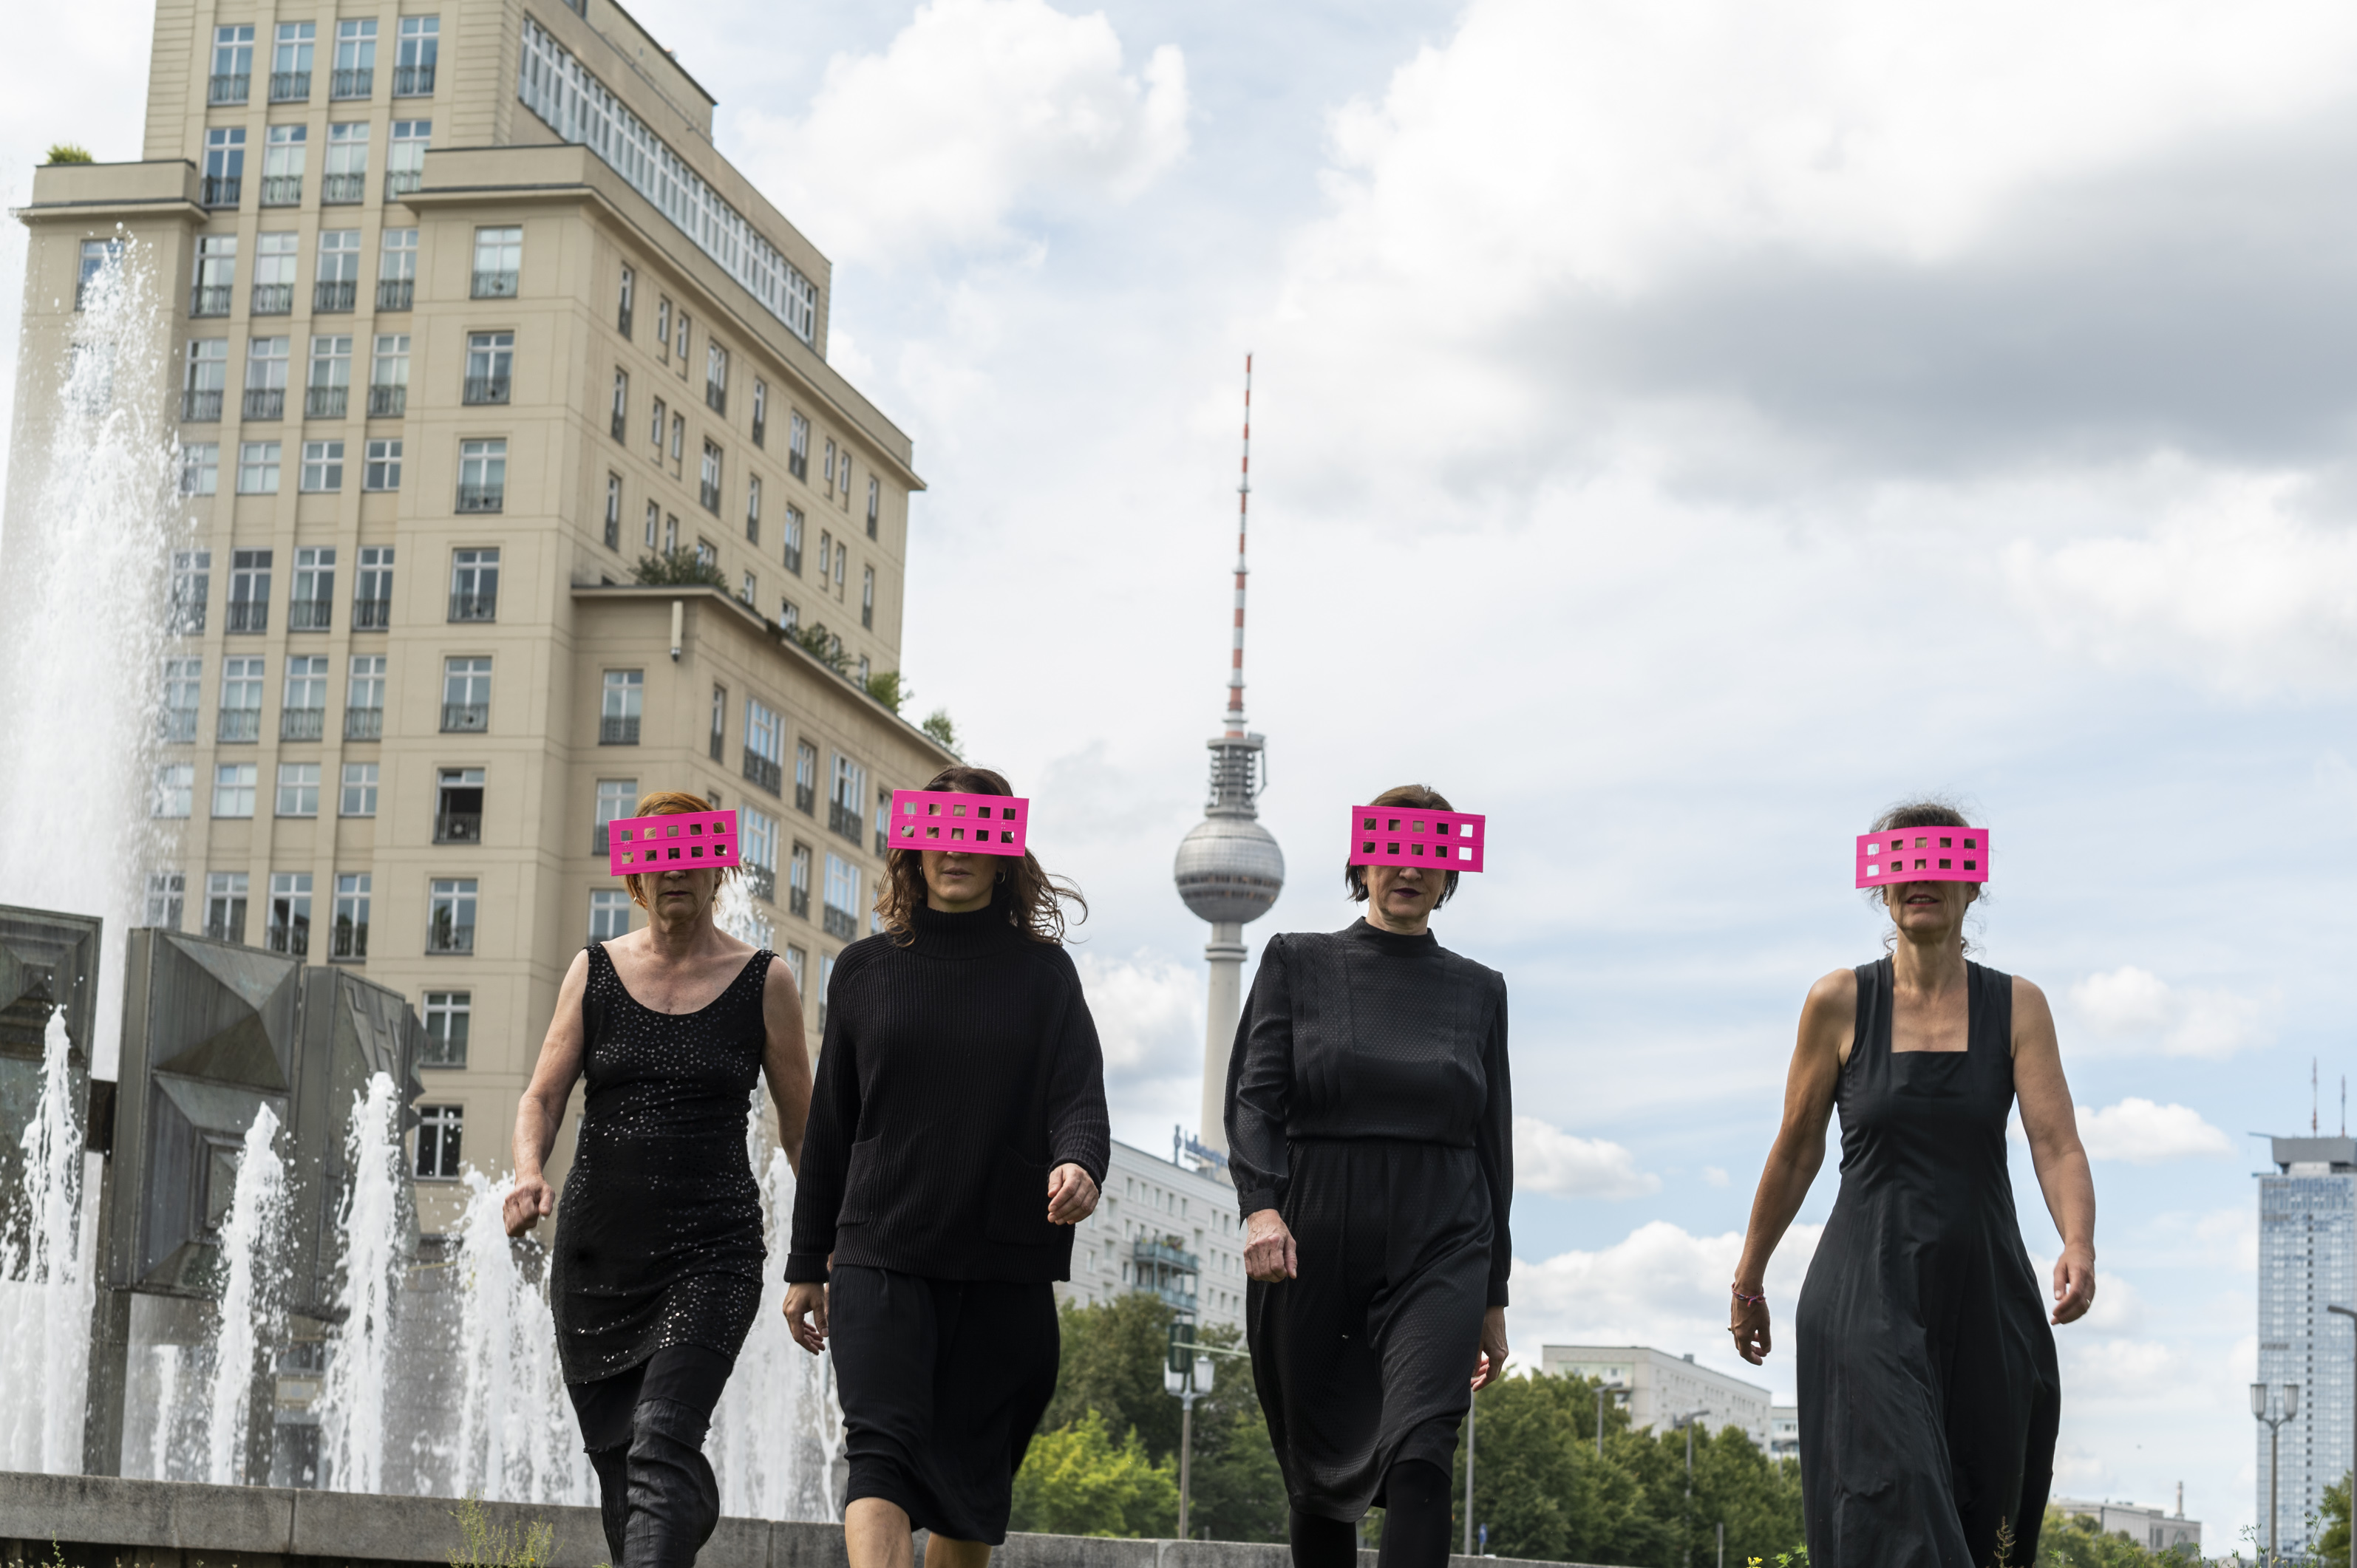 Vier Frauen laufen schwarz gekleidet durch Berlin. Hinter ihnen ist der Fernsehturm zu sehen. Sie tragen pinke Balken vor den Augen, die durchlöchert sind.